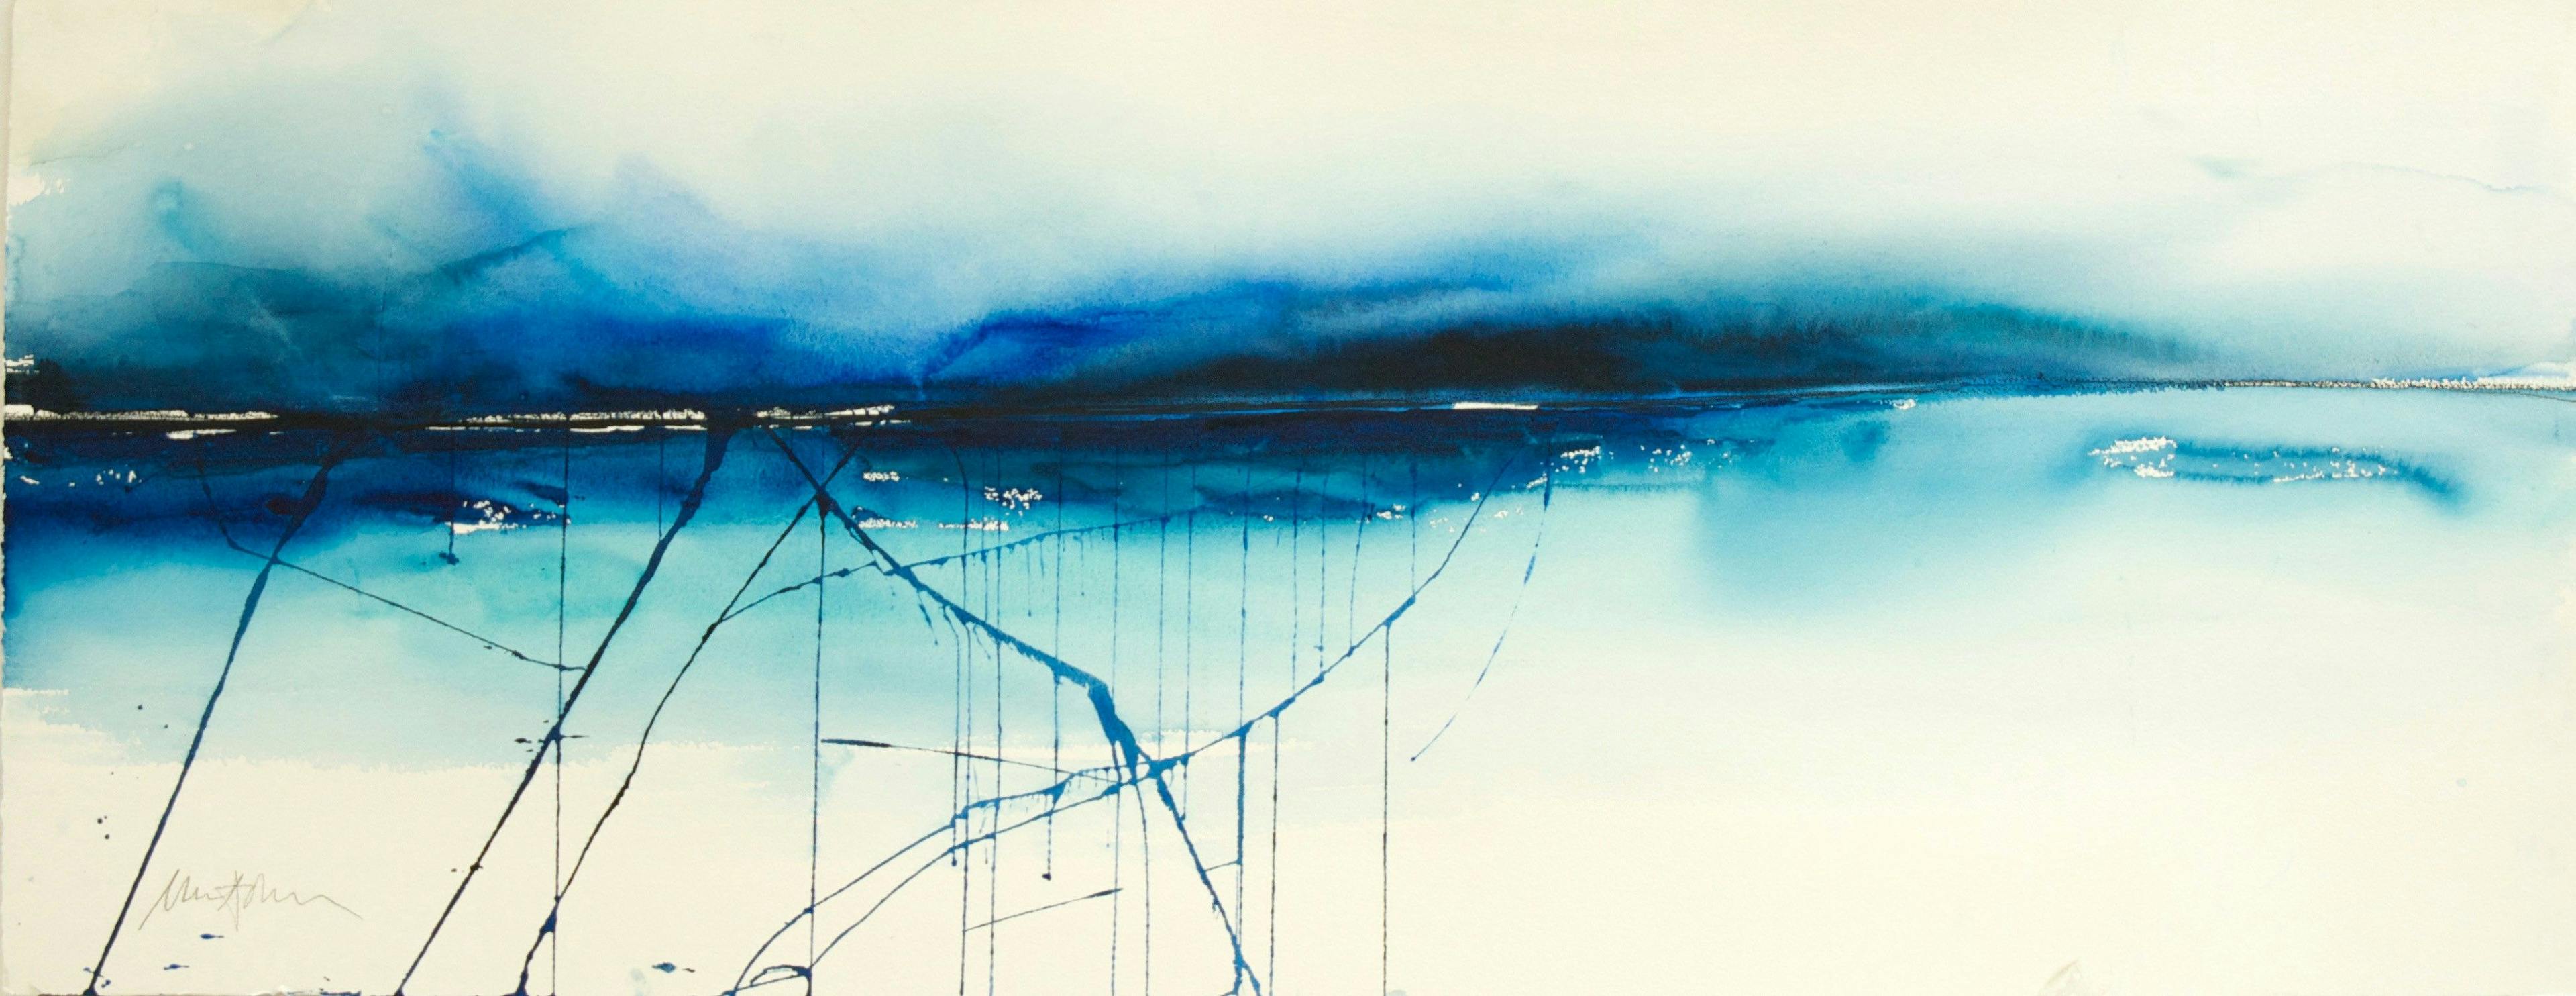 Akvarell av Ulla Ohlson med titeln "Haväng", mestadels i blåa toner